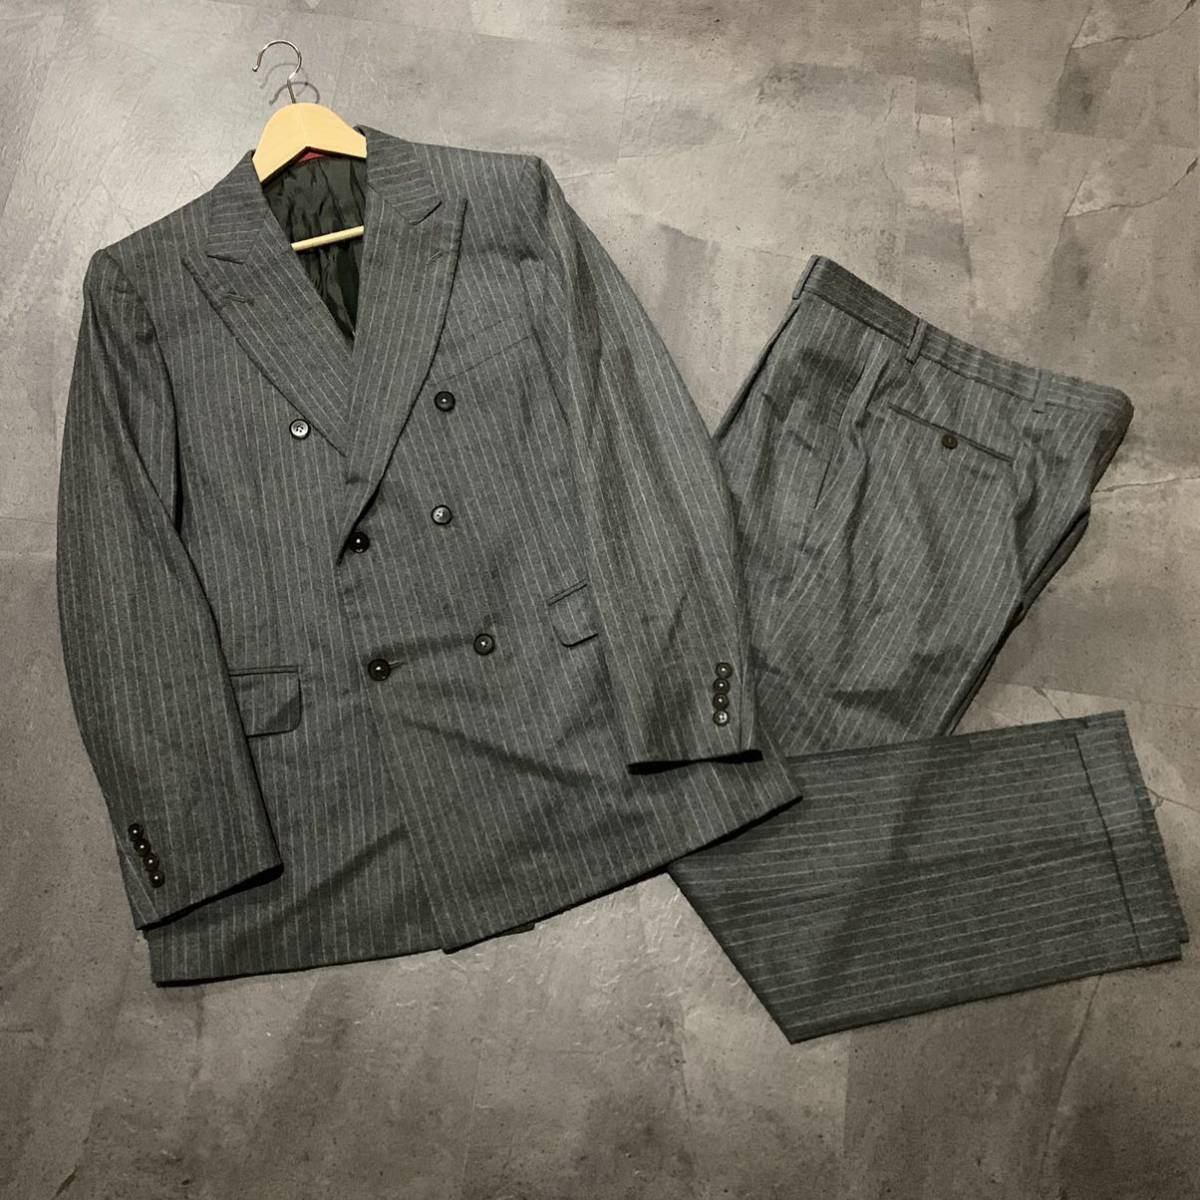 新規購入 ☆ O 至高の一品 ジャケット&パンツ 高級紳士服 48 ダブル